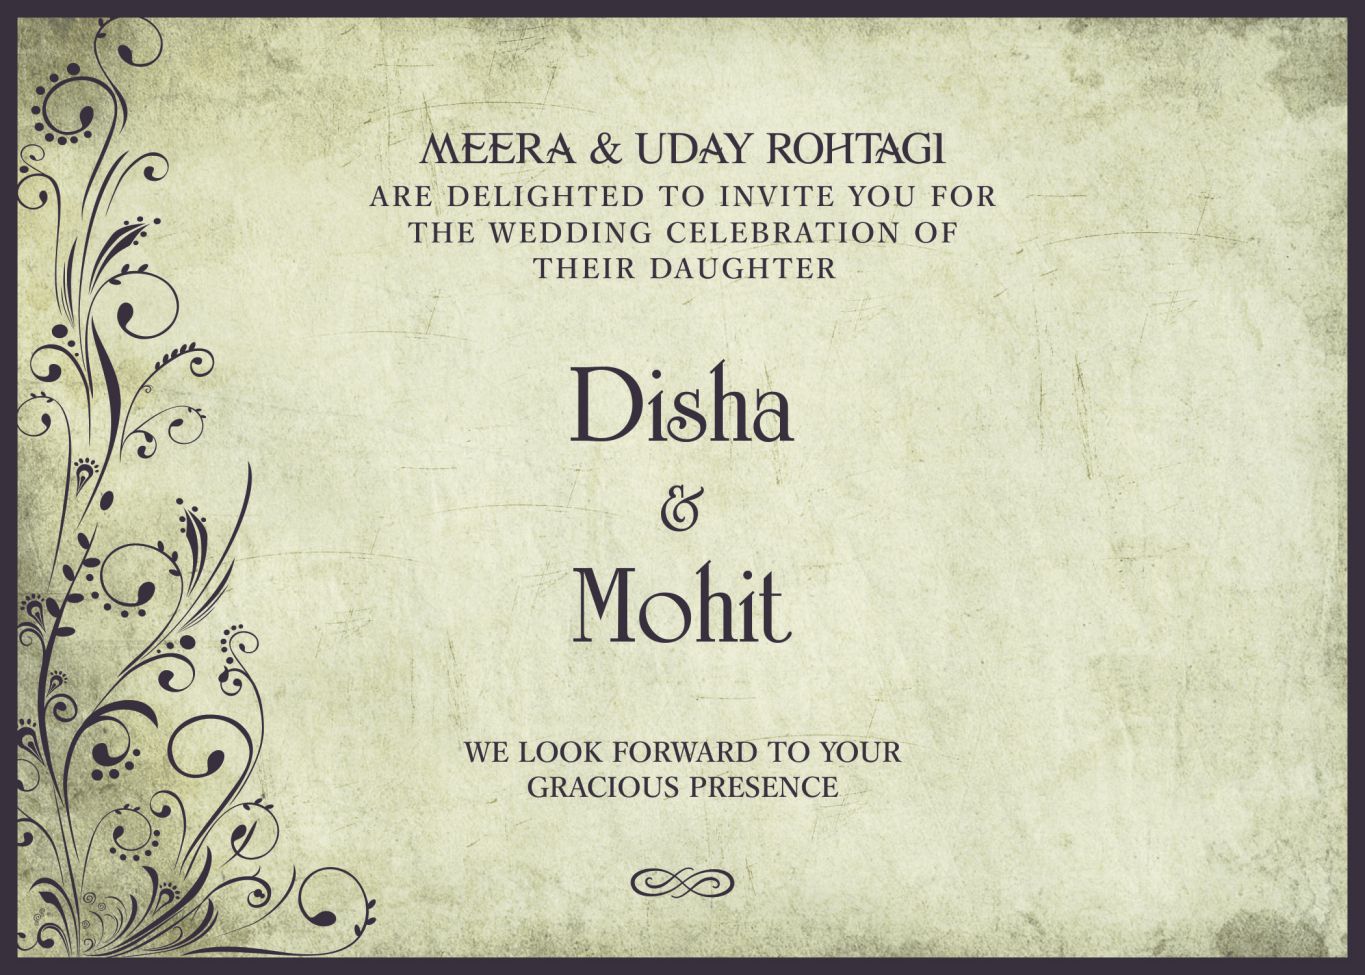 Disha and Mohit